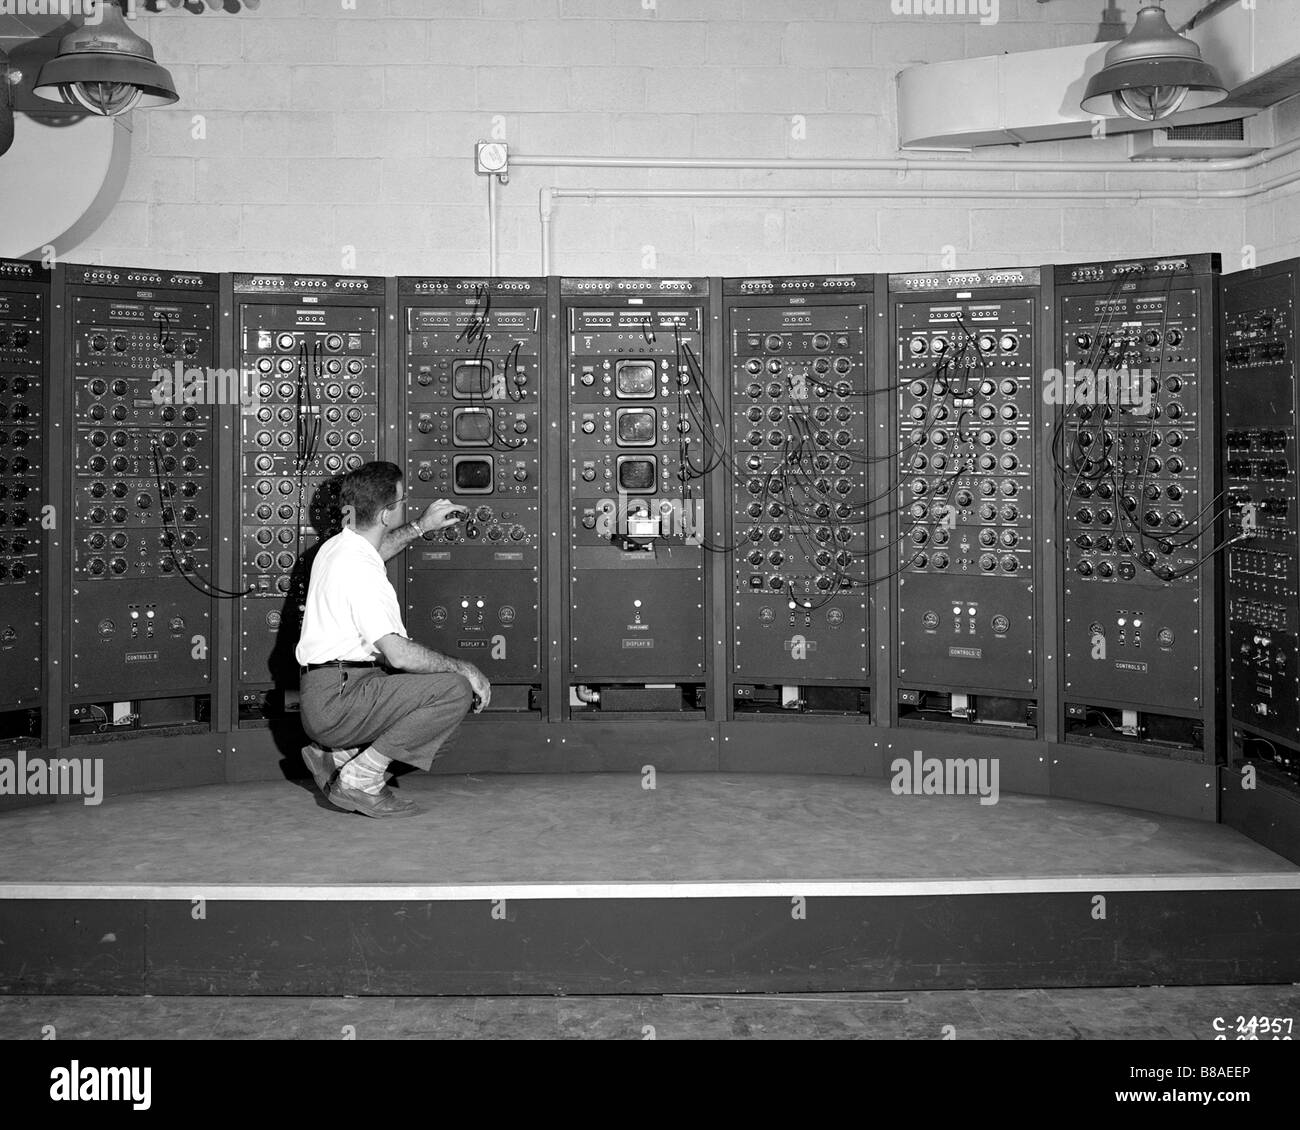 Analog Computing Machine Stock Photo